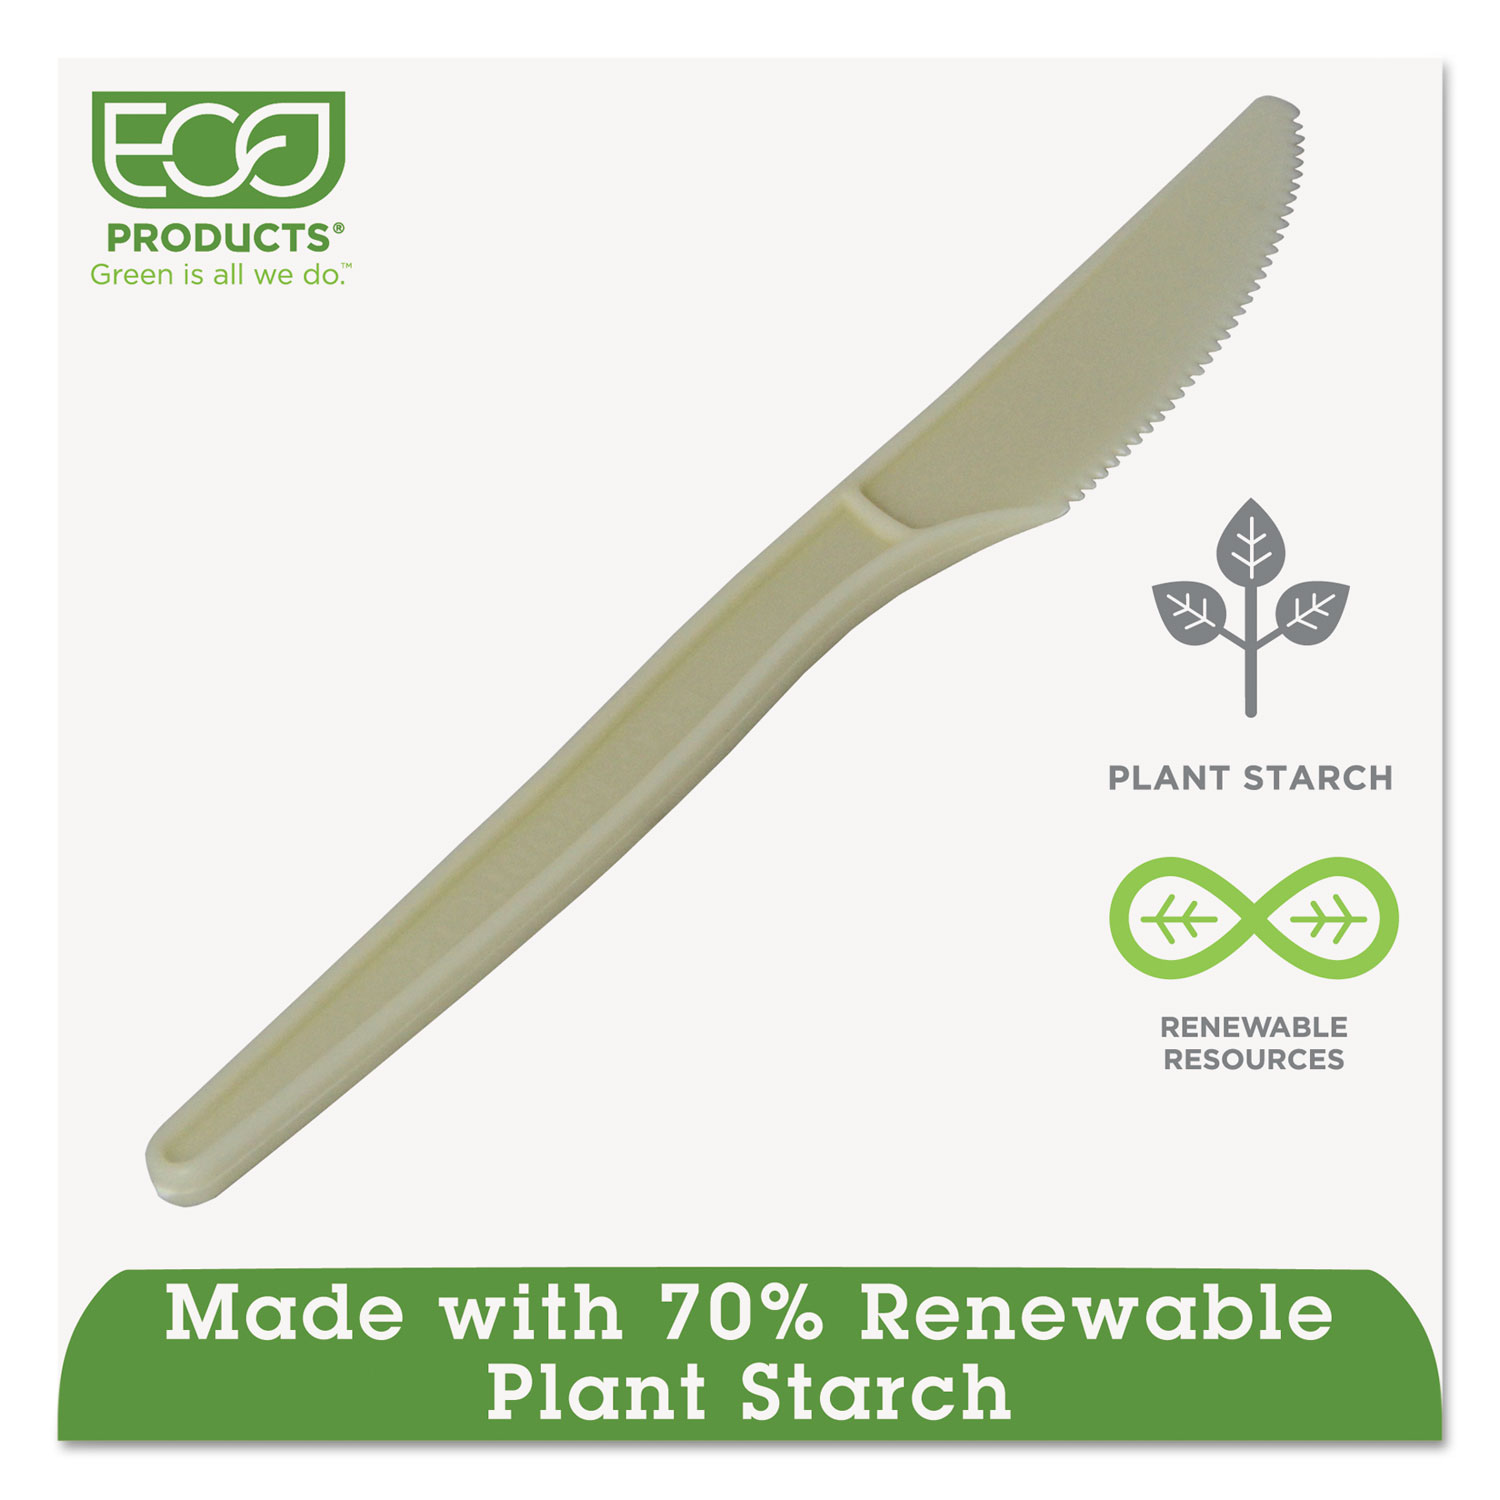 Plant Starch Knife - 7, 50/PK, 20 PK/CT